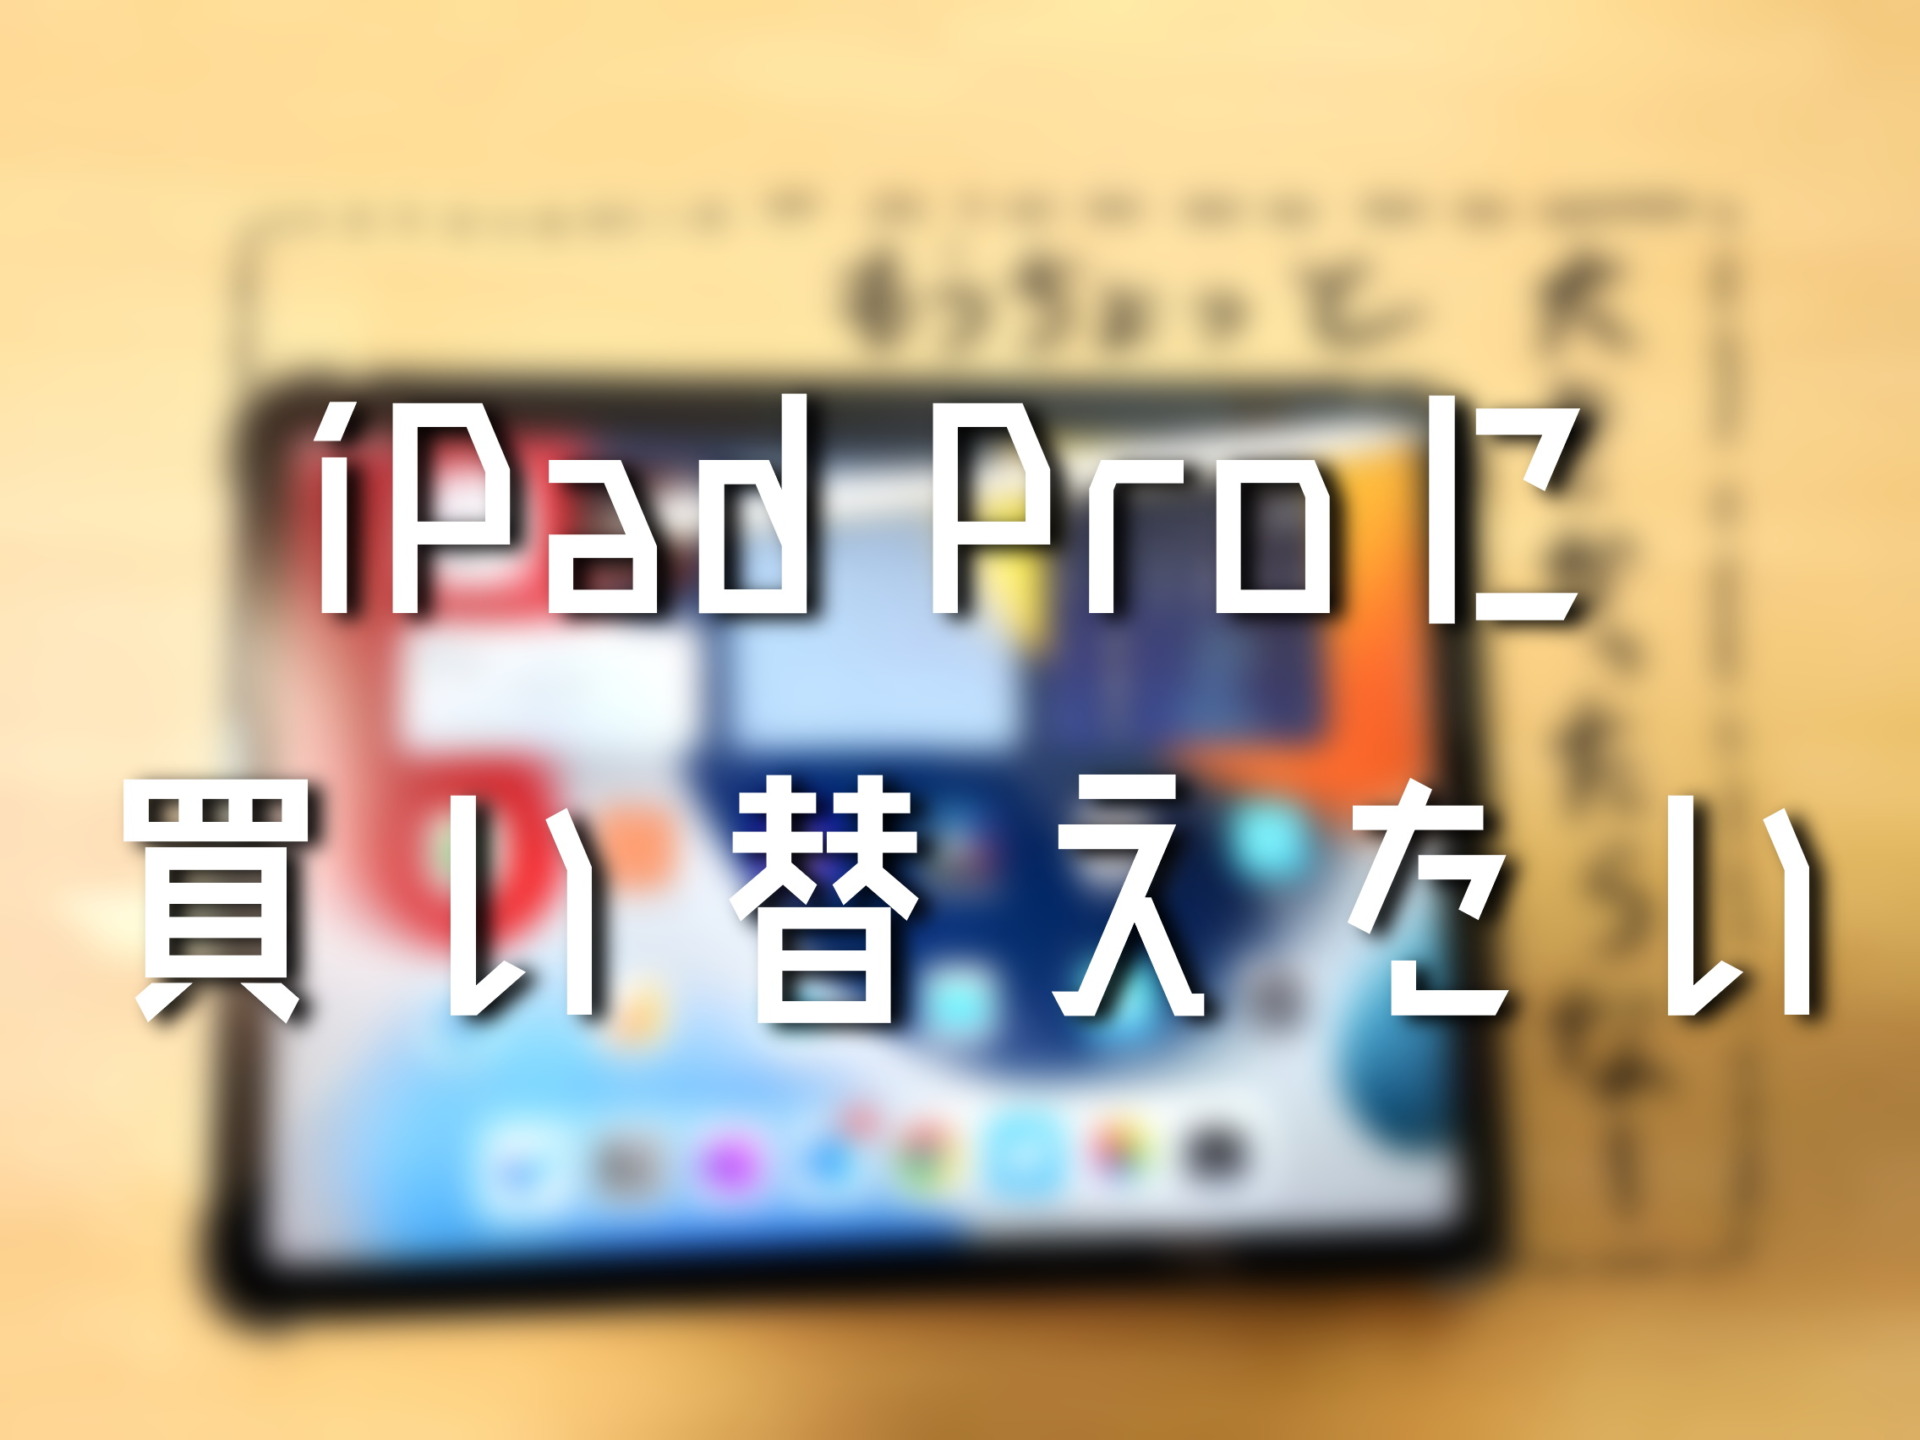 iPad AirとProを比較するとProに買い替えたくなった